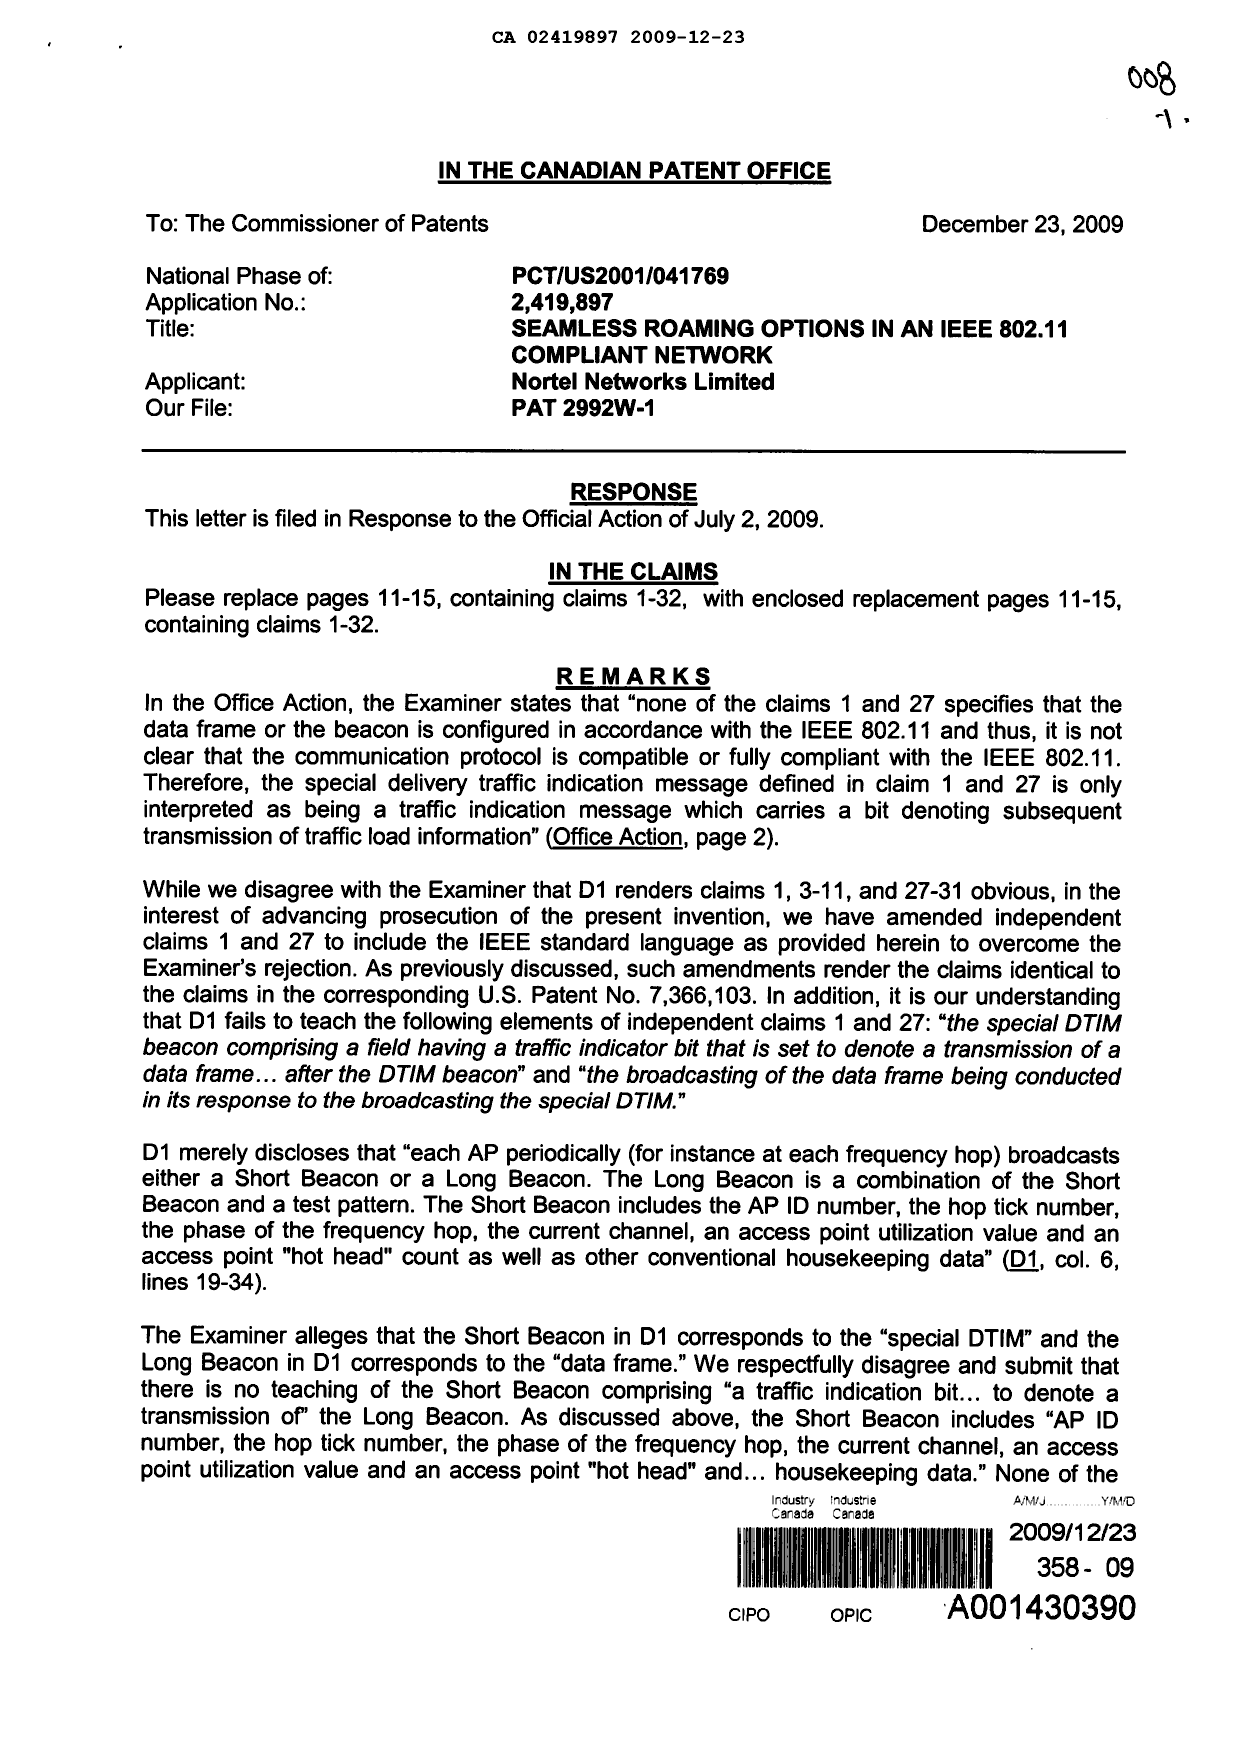 Document de brevet canadien 2419897. Poursuite-Amendment 20091223. Image 1 de 7